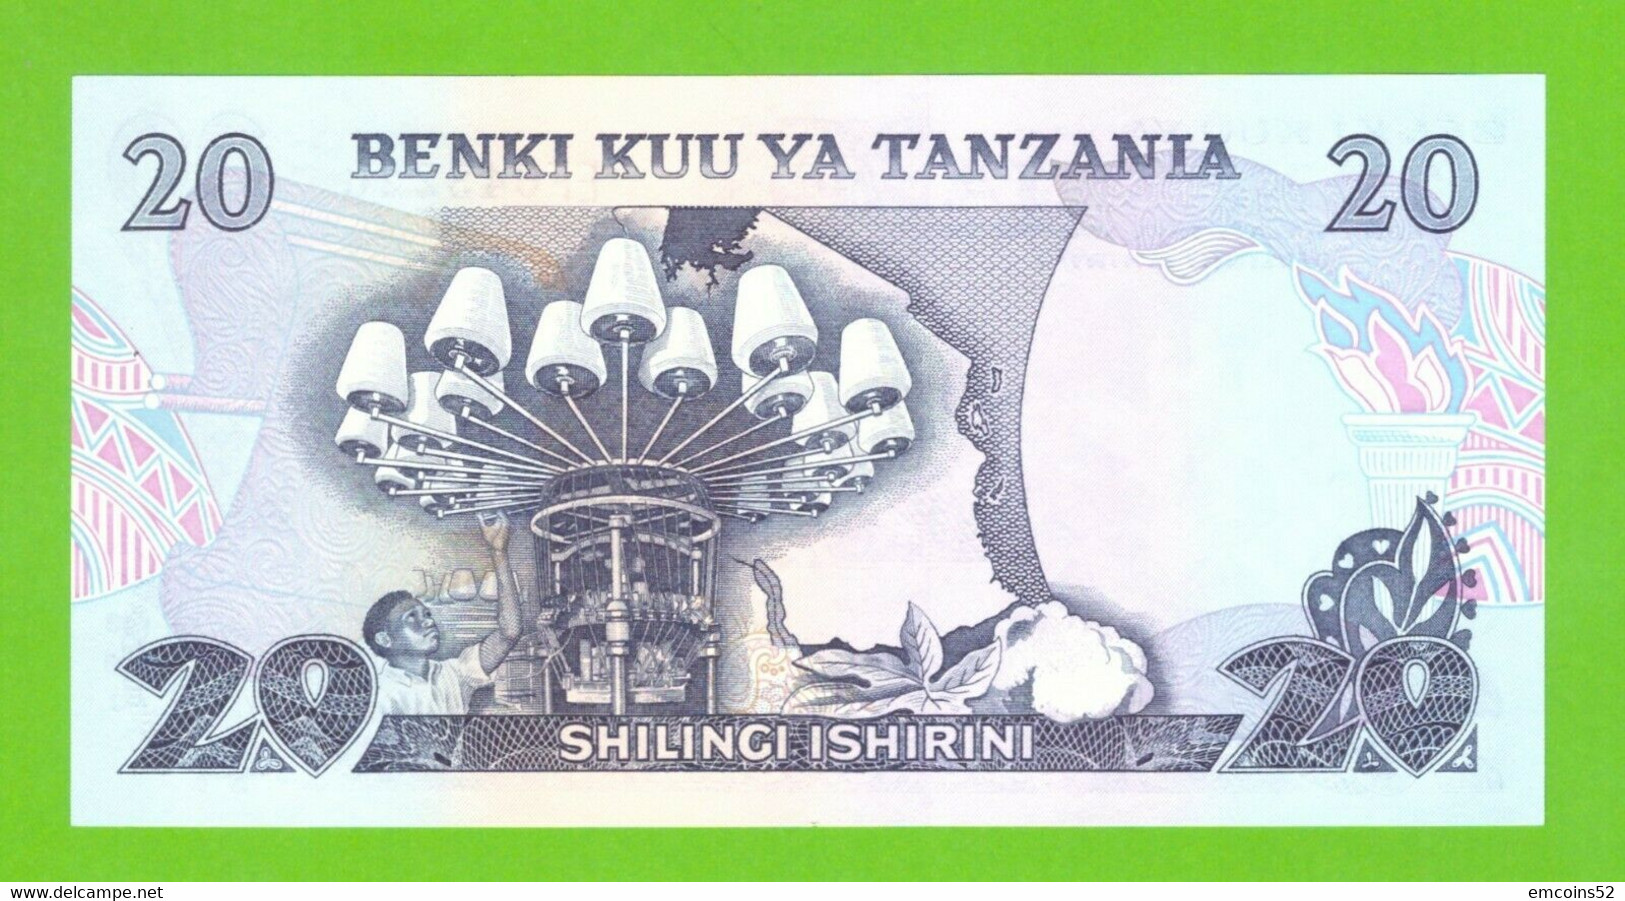 TANZANIA 20 SHILLINGS 1978  P-7c  UNC - Tanzania